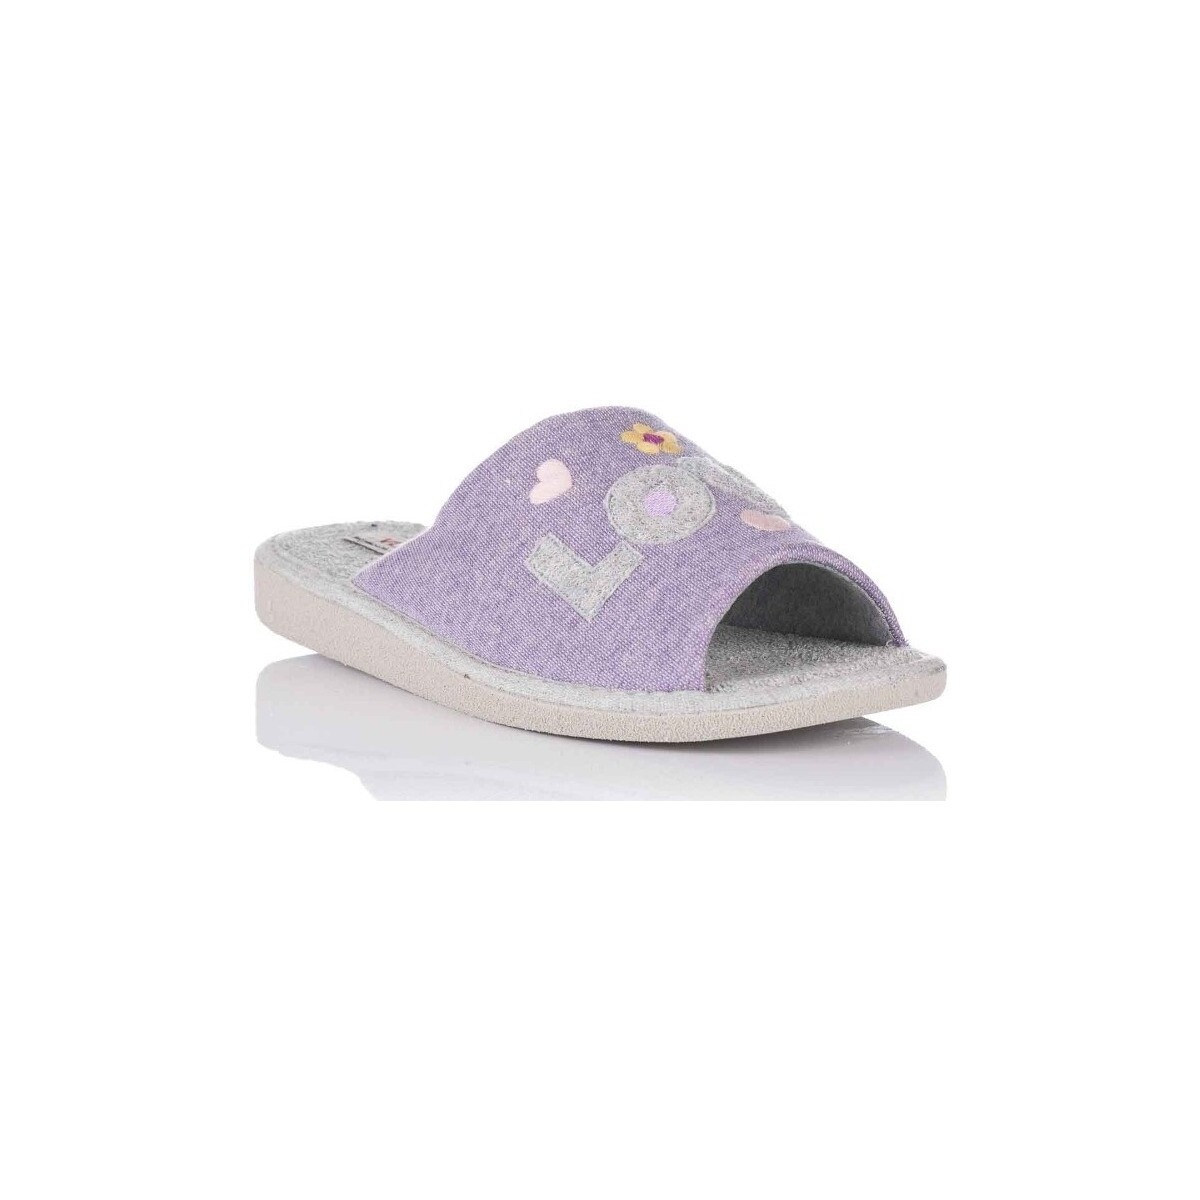 Schuhe Damen Hausschuhe Vulladi 9079-692 Violett